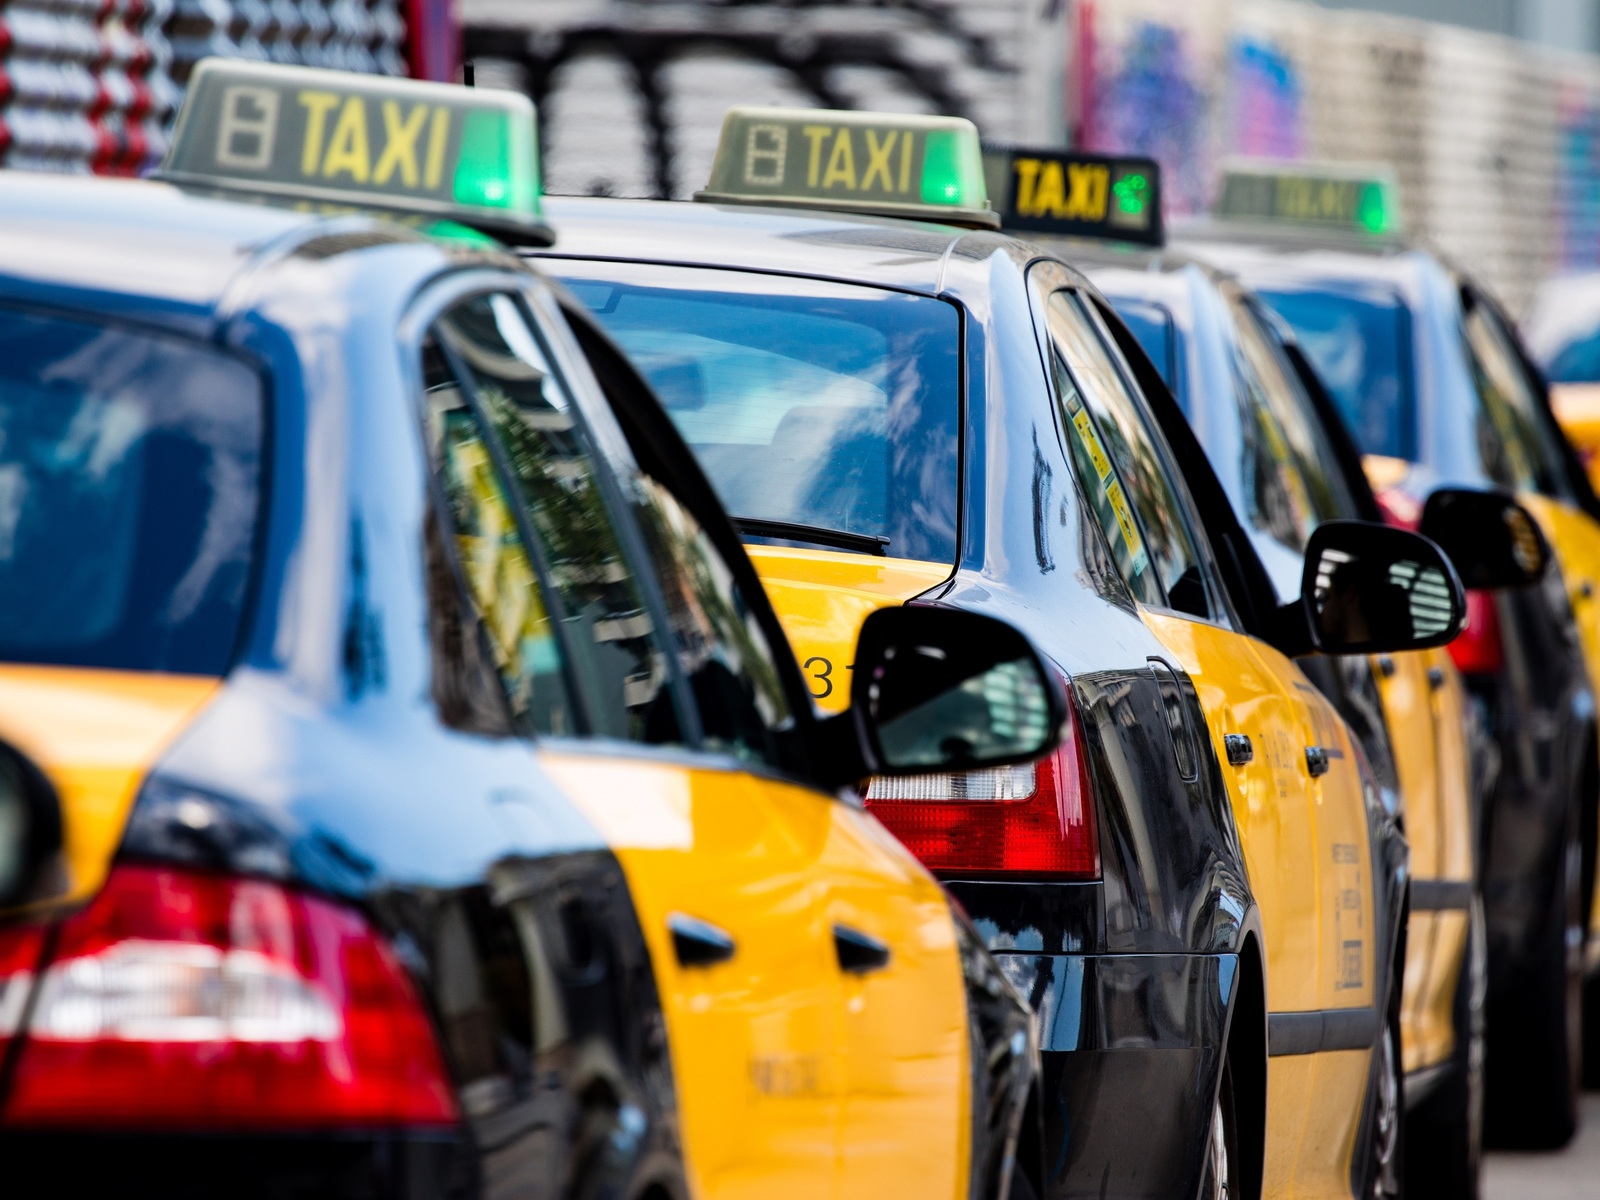 Barcelona subirá ligeramente las tarifas de taxi en 2022